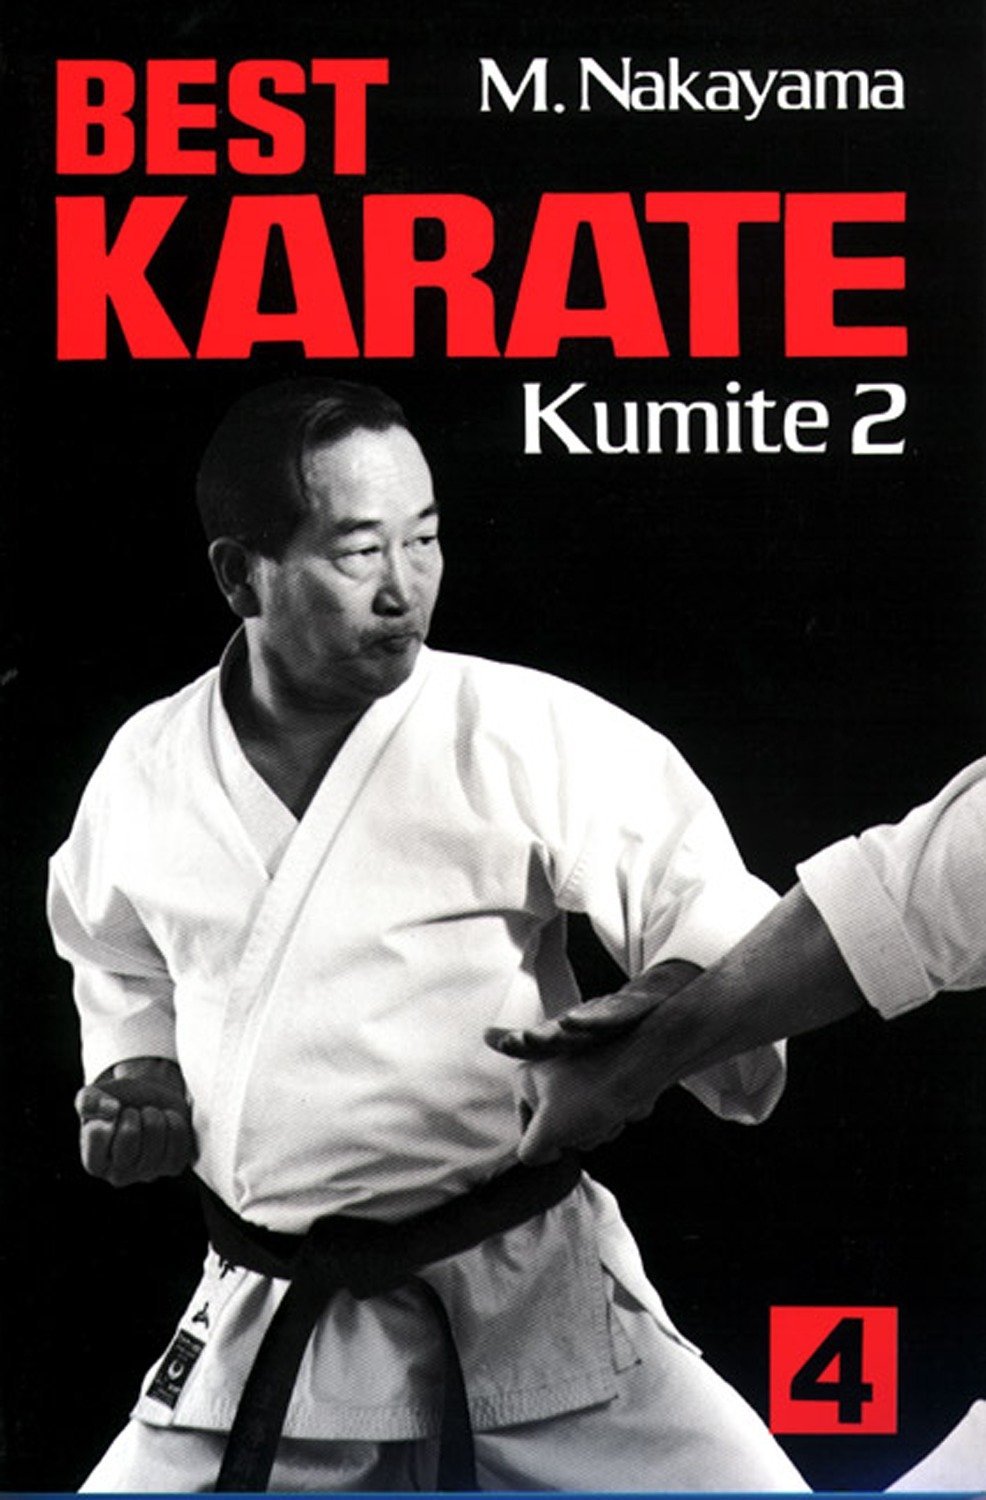 Best Karate Book 4: Kumite 2 by Masatoshi Nakayama - Budovideos Inc